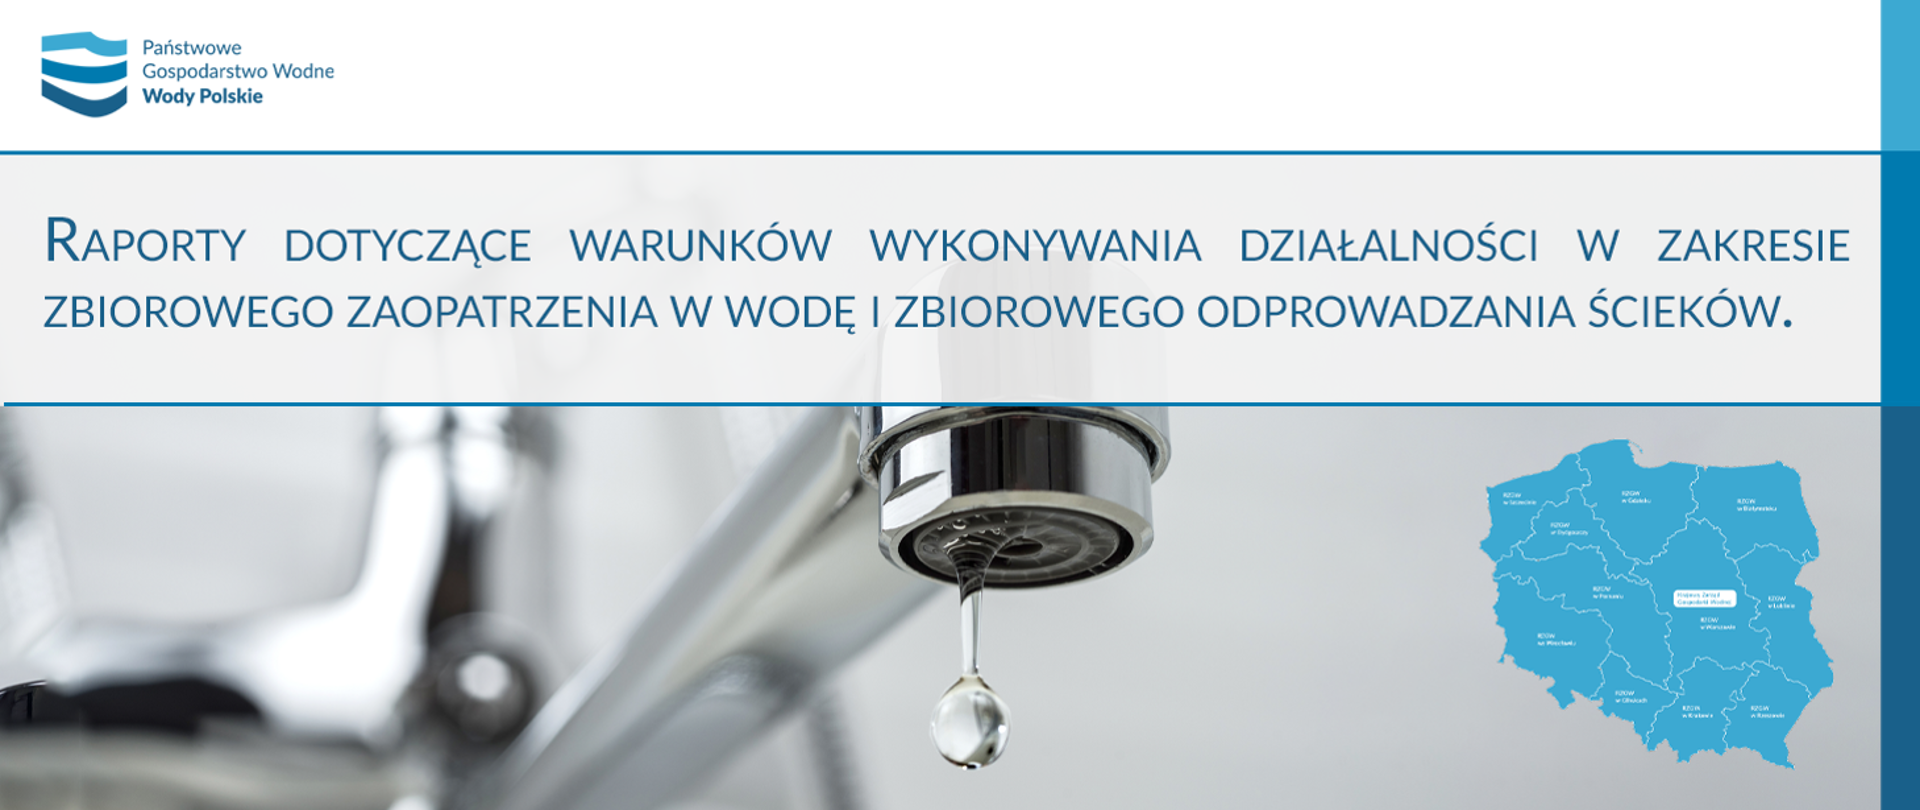 Publikacja raportów dotyczących warunków wykonywania działalności w zakresie zbiorowego zaopatrzenia w wodę i zbiorowego odprowadzania ścieków dla lat 2018-2022 na obszarach RZGW